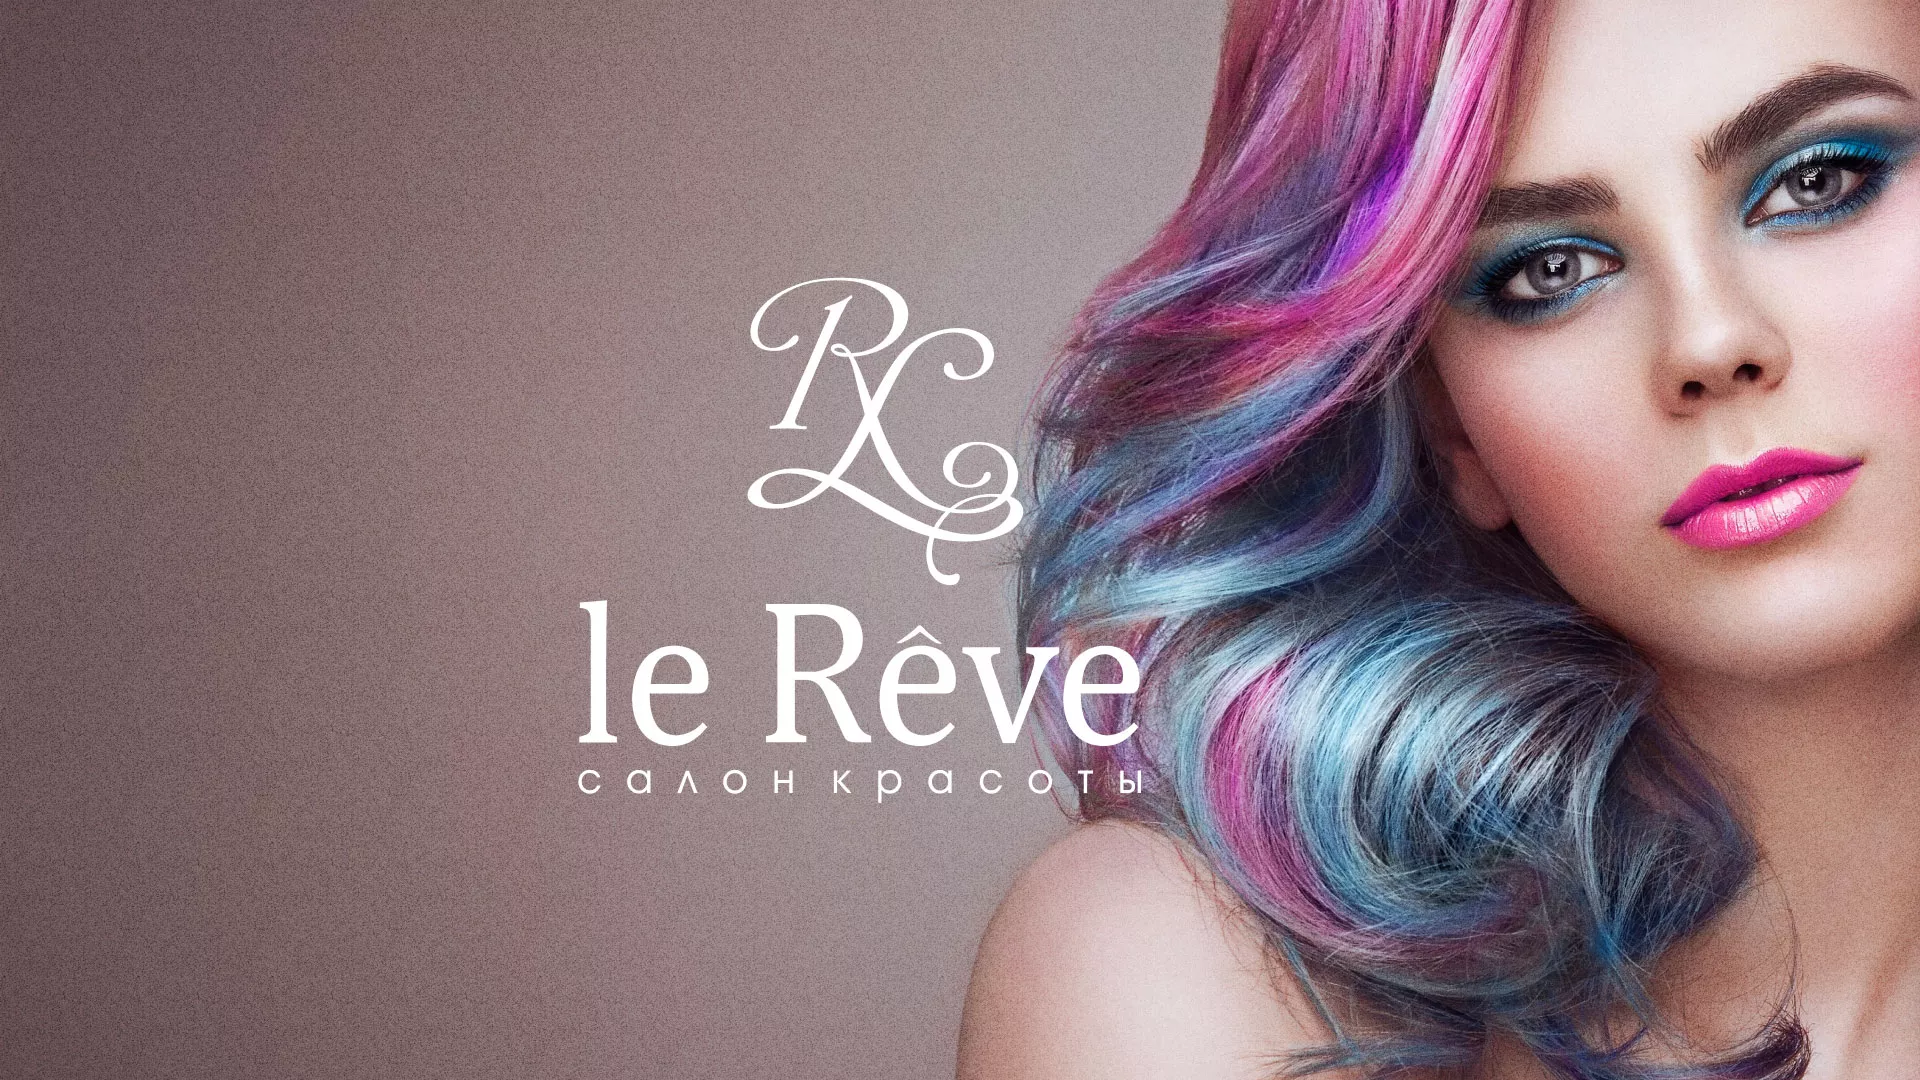 Создание сайта для салона красоты «Le Reve» в Соколе